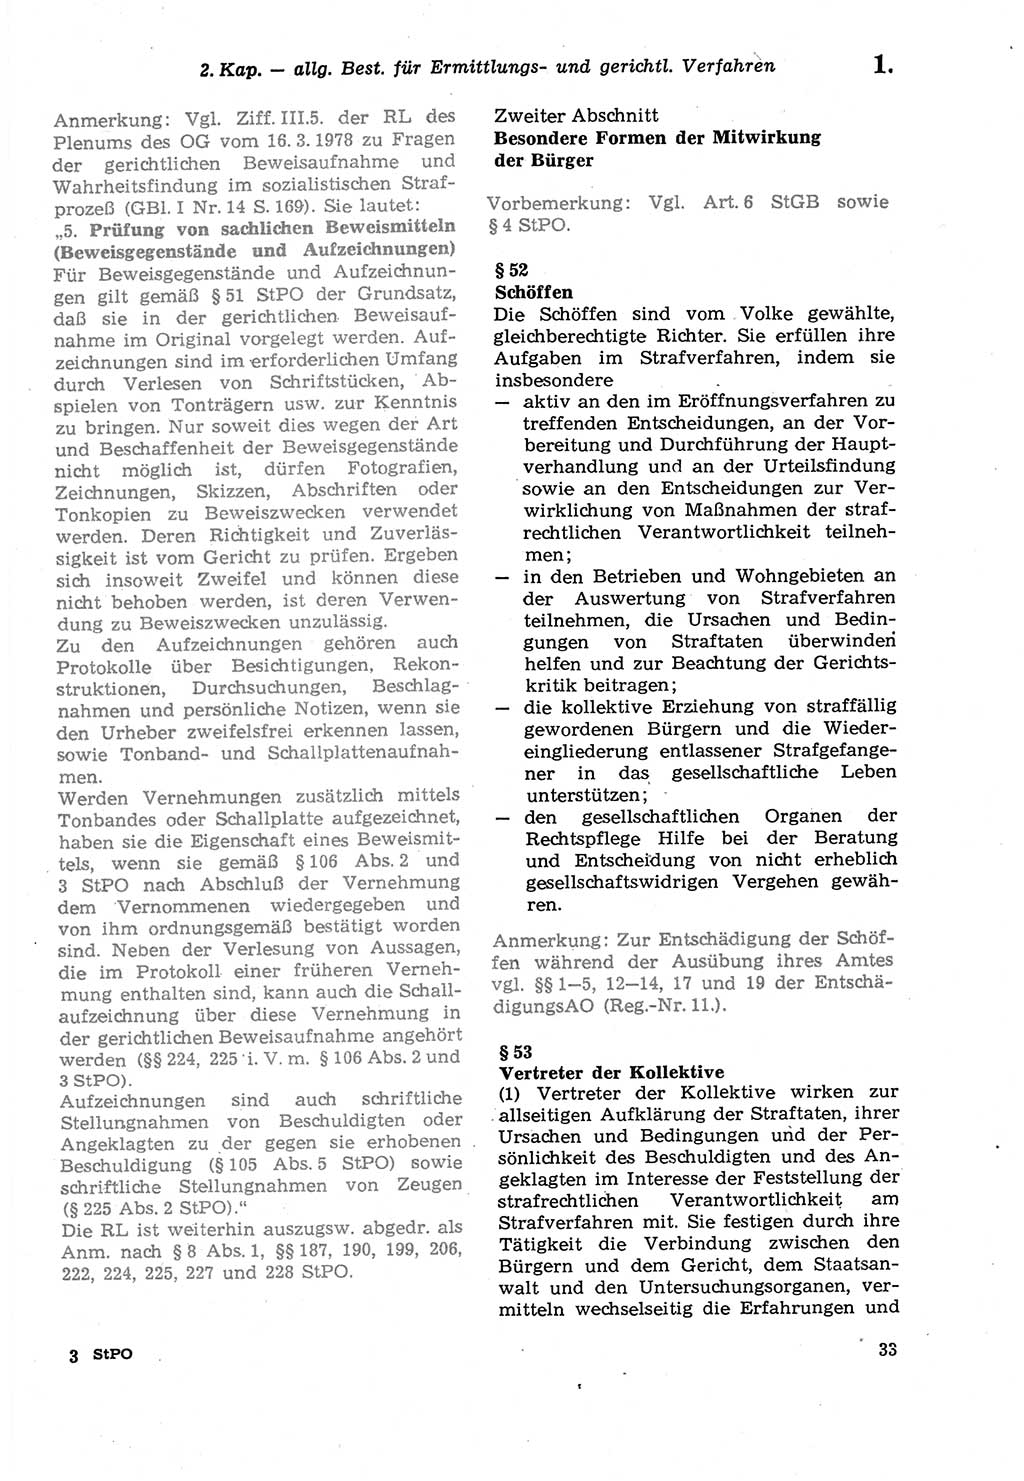 Strafprozeßordnung (StPO) der Deutschen Demokratischen Republik (DDR) sowie angrenzende Gesetze und Bestimmungen 1979, Seite 33 (StPO DDR Ges. Best. 1979, S. 33)